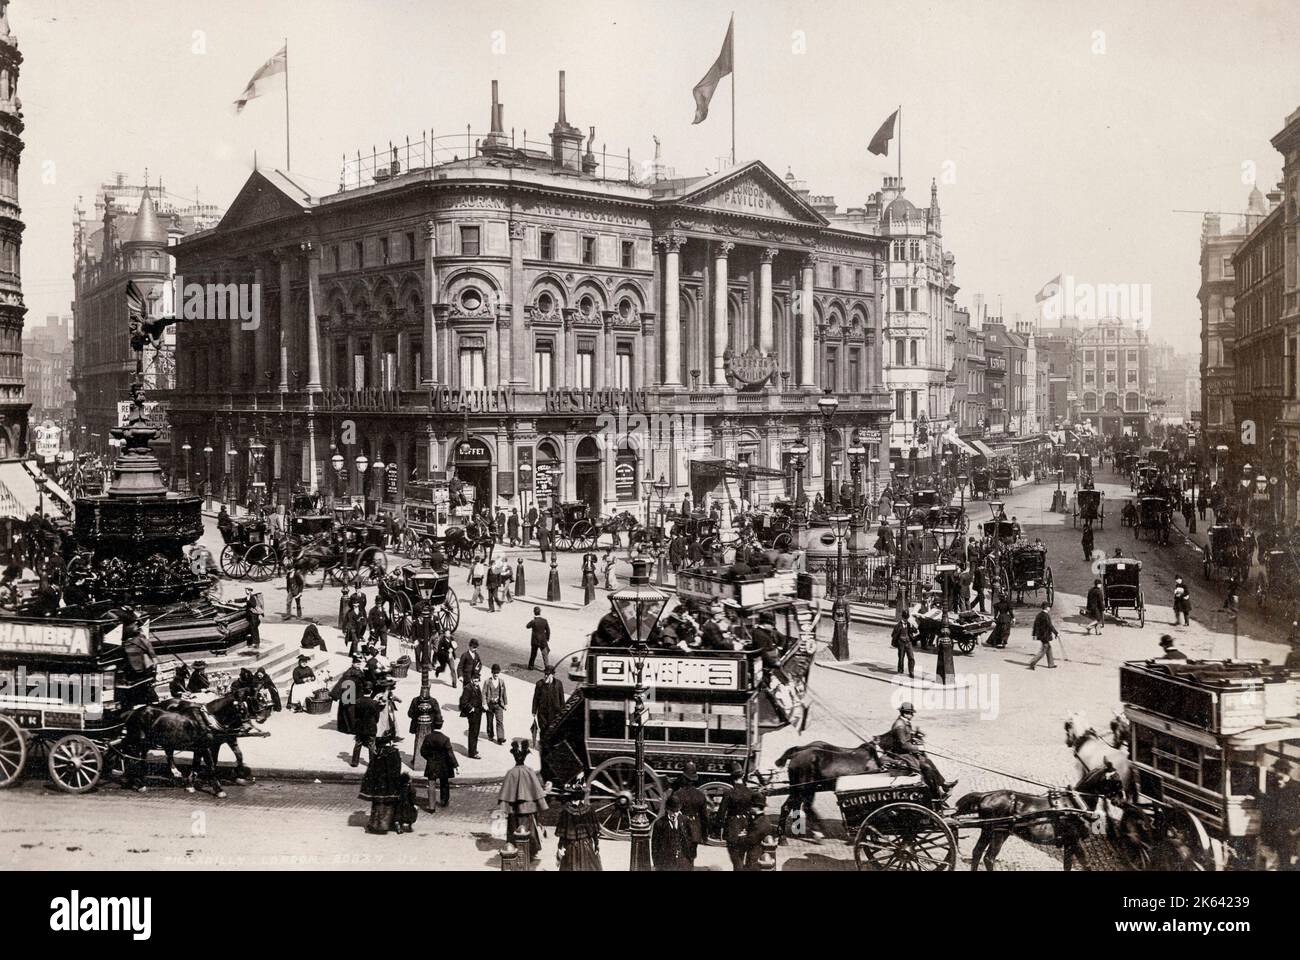 Photographie ancienne de la fin du XIXe siècle - Piccadilly Circus London. Transport de chevaux et de piétons. Banque D'Images